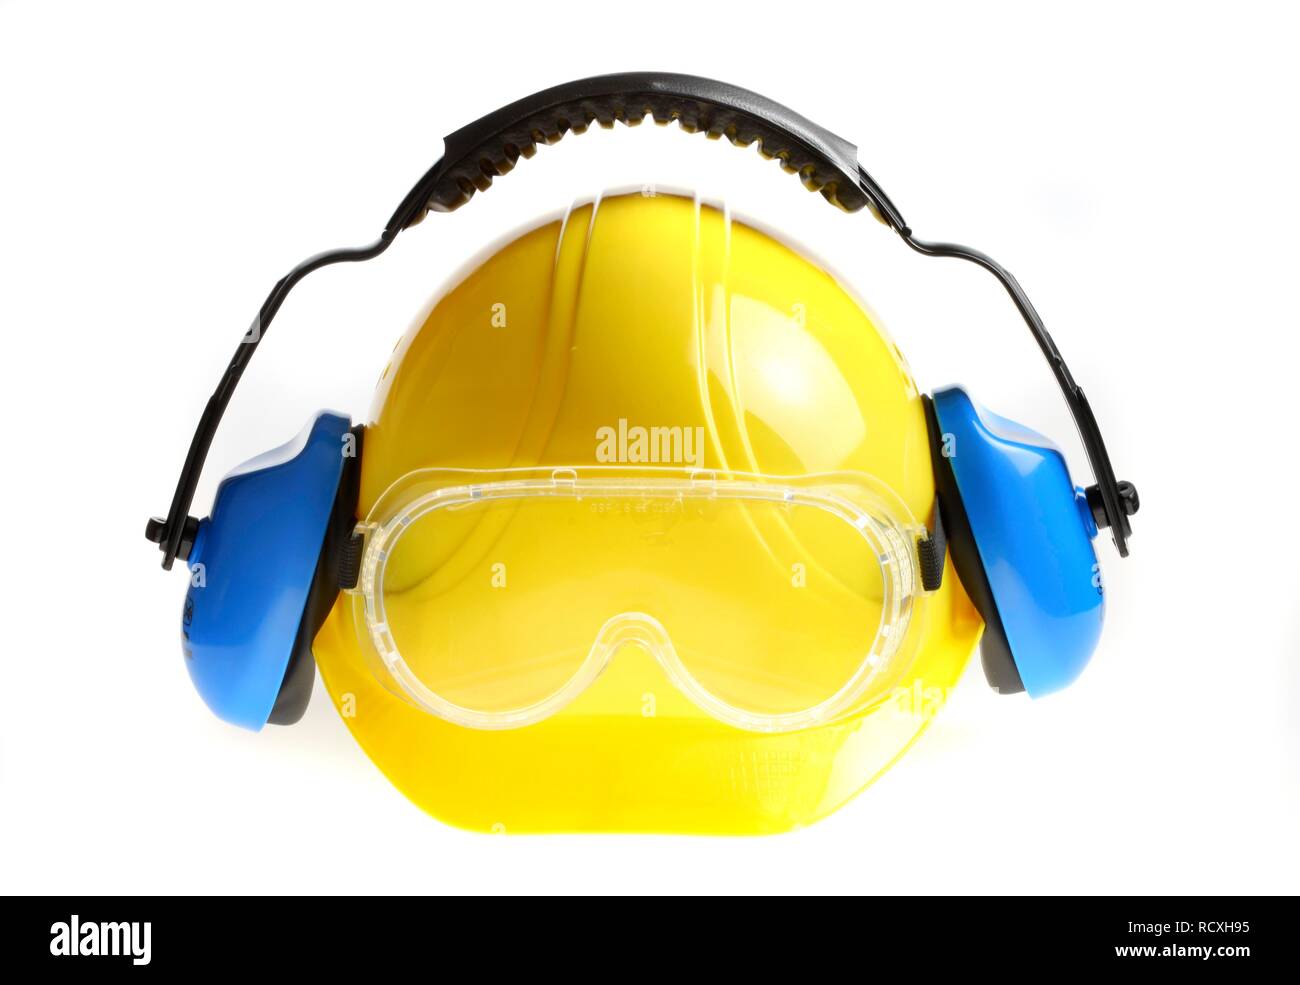 Persönliche Schutzausrüstung, Gehörschutz, Schutzhelm, Schutzbrille Stockfoto